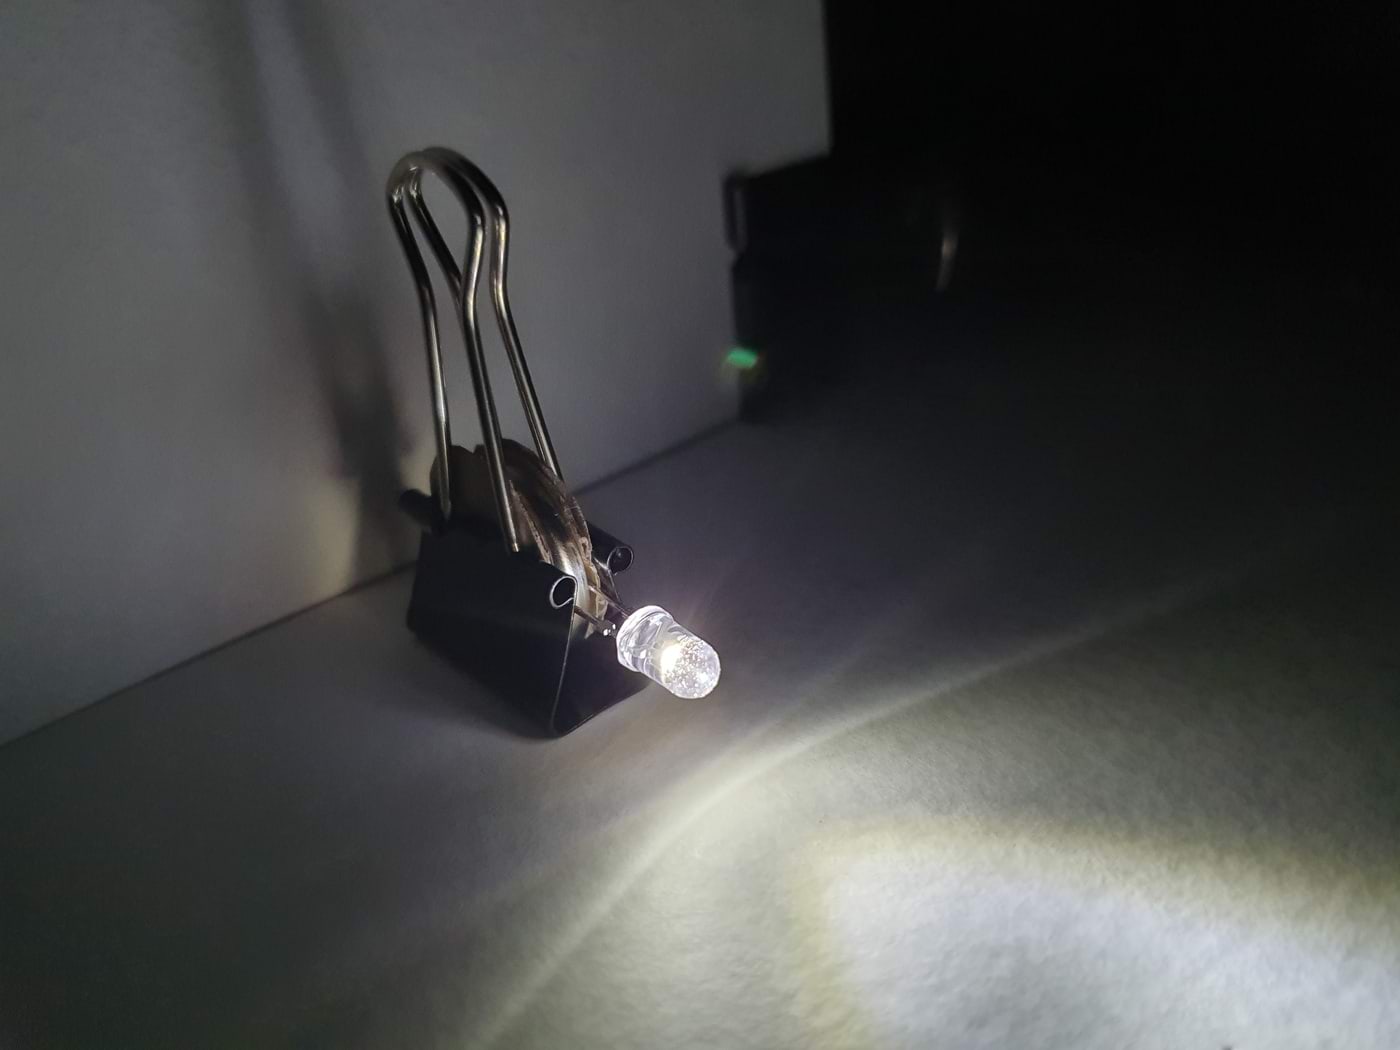 Fragment katsest, pange tähele LED-lampi hoidva paberiklambri varju ekraanil.